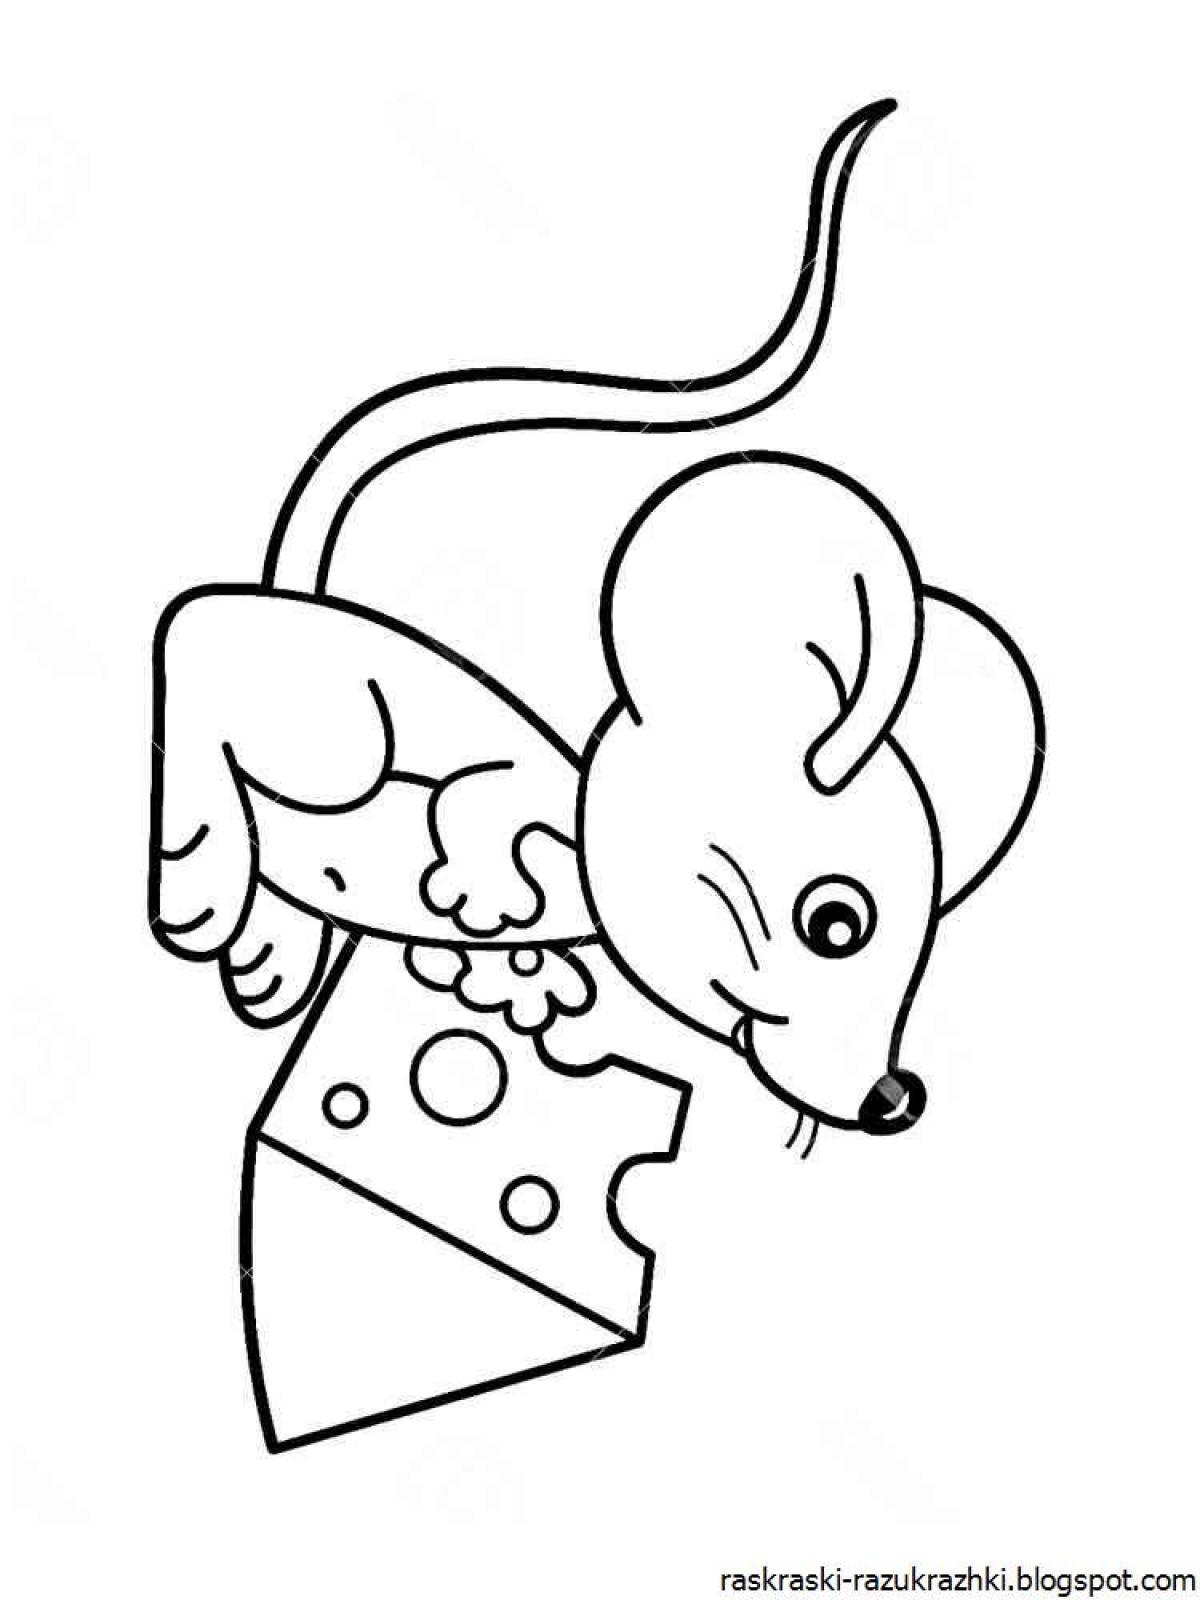 Мышка норушка рисунок раскраска